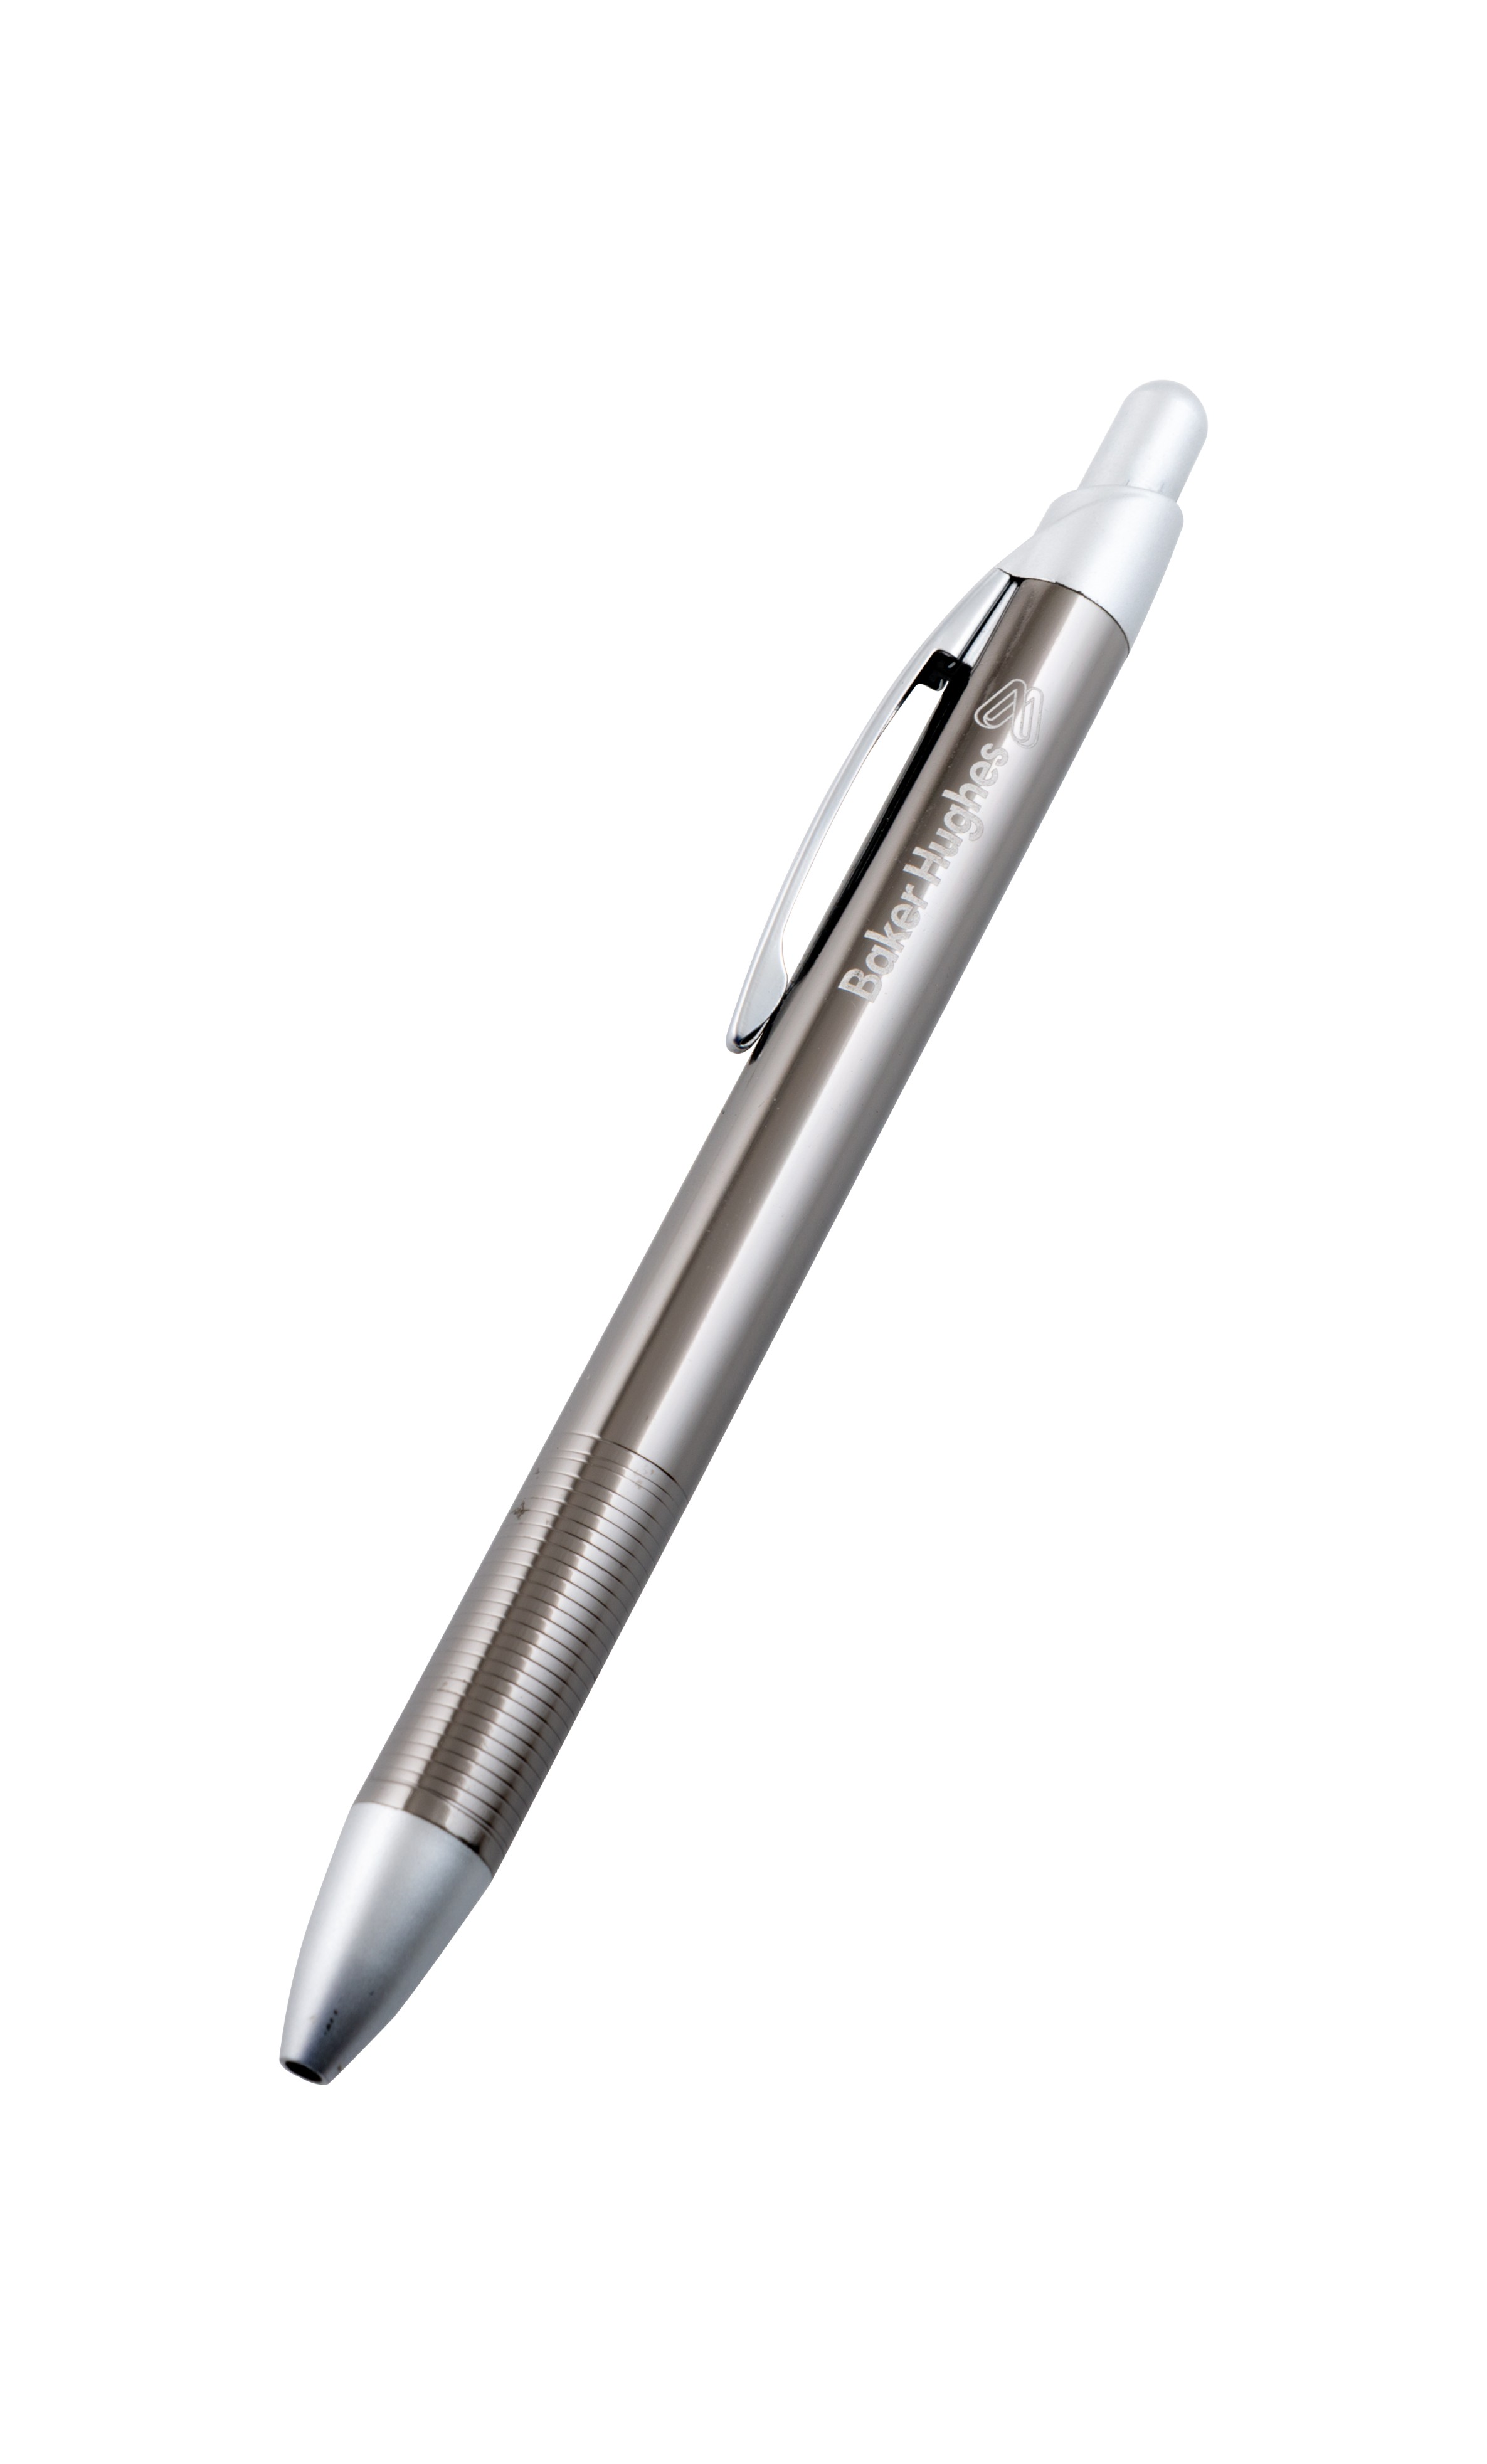 ٢٥ قلم من أقلام الحبرالجاف ذات الغطاء الفضي